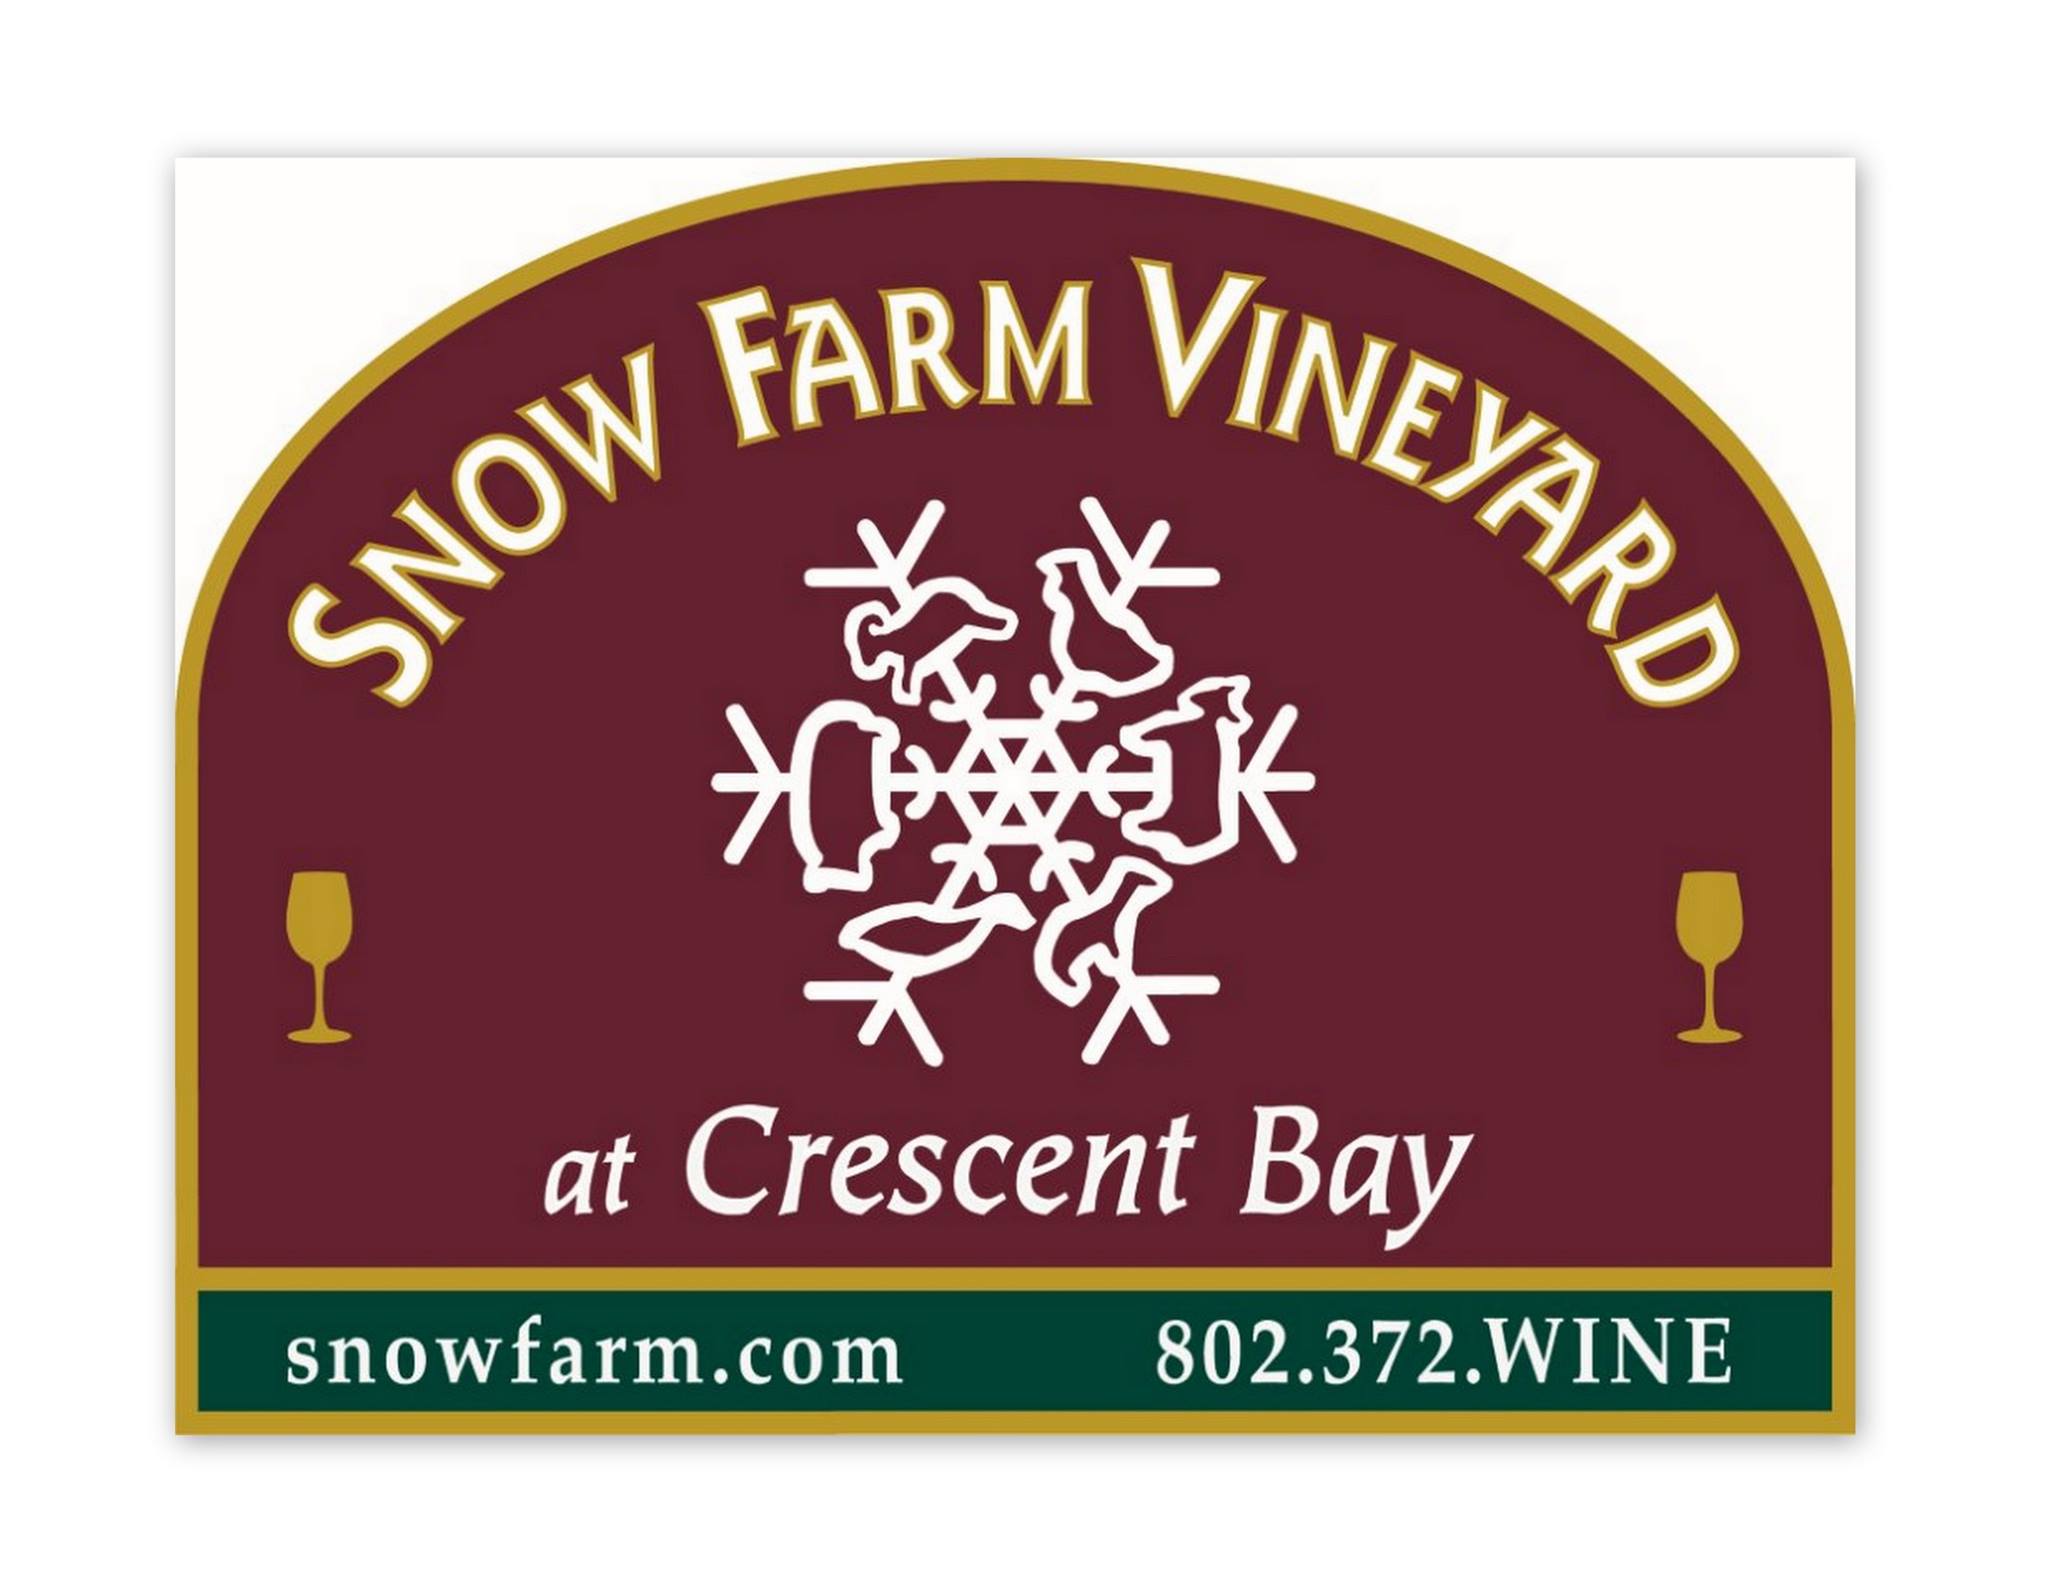 Snow Farm Vineyard